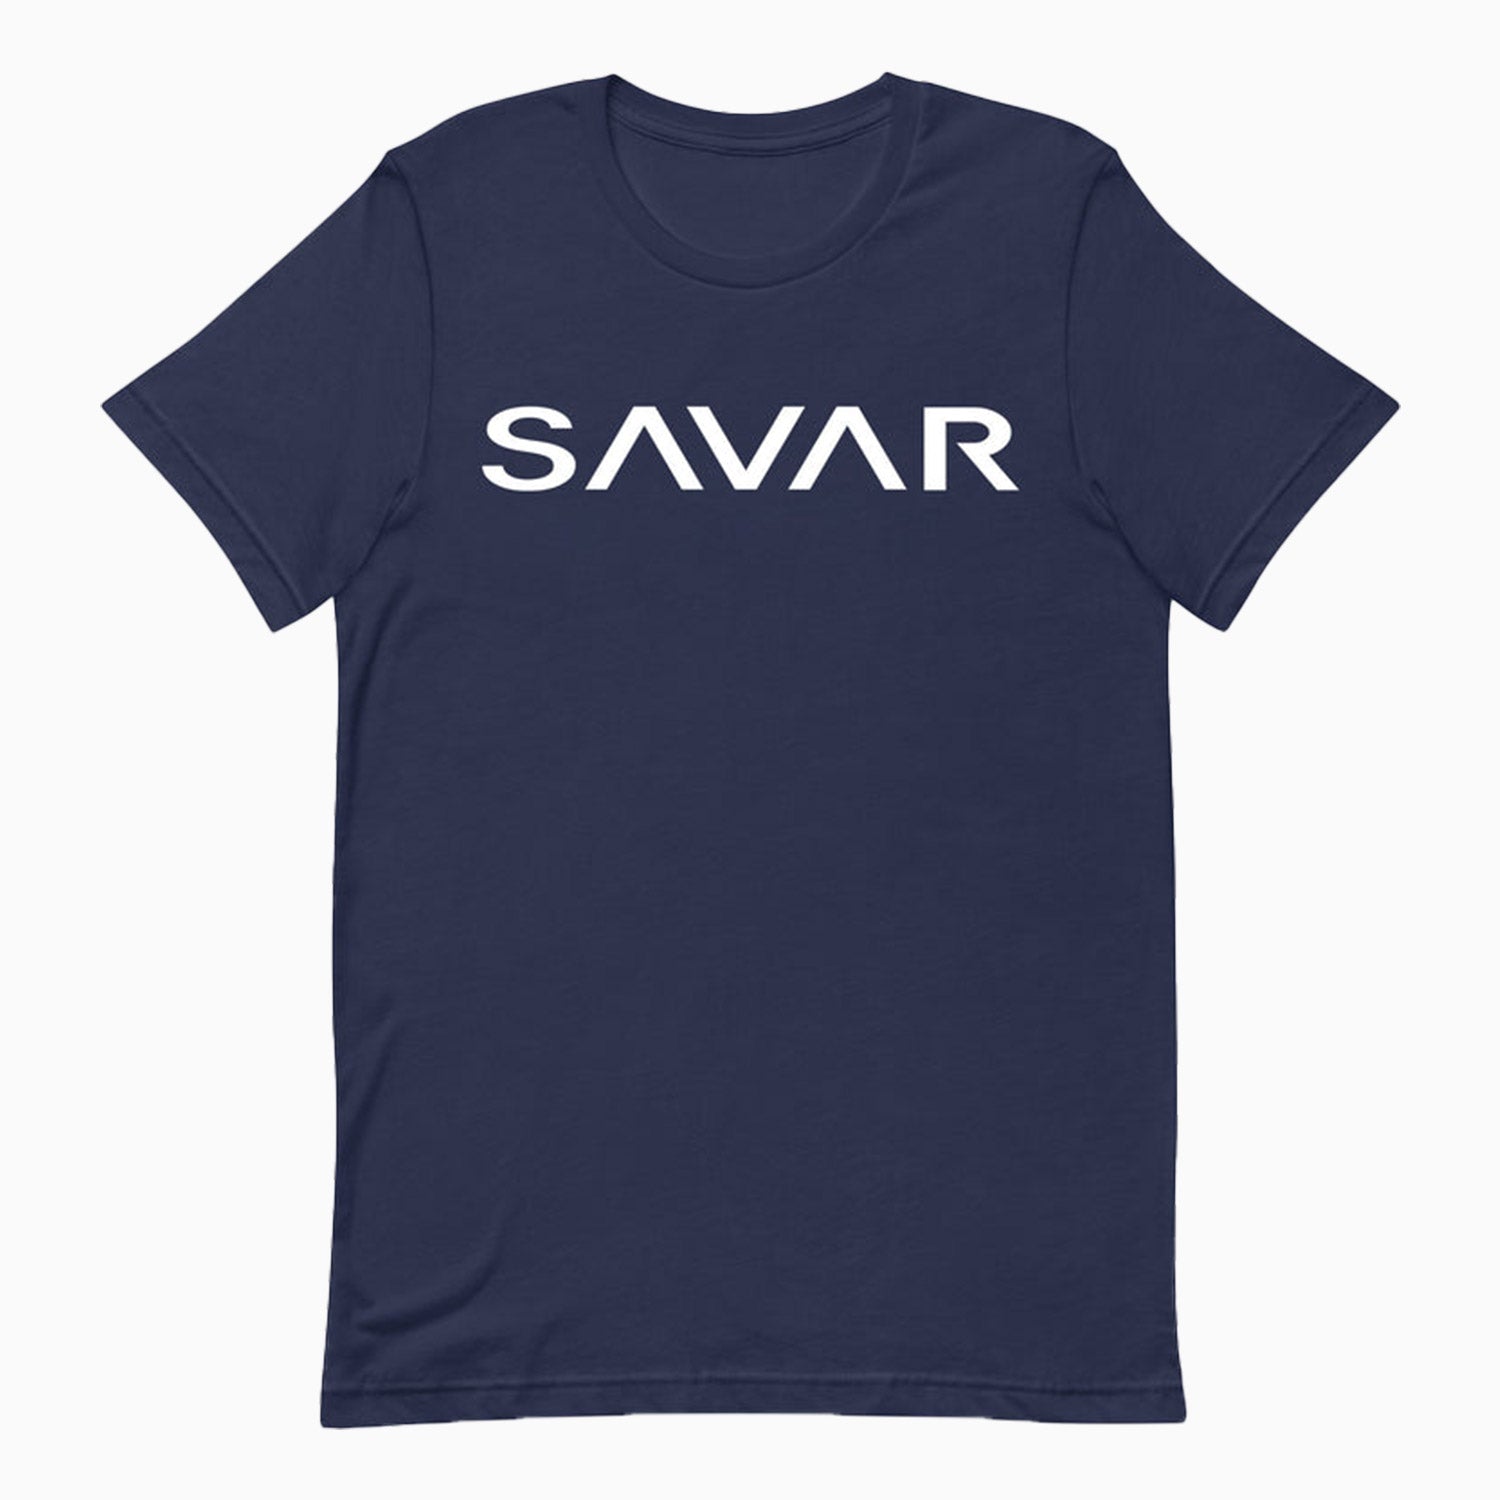 savar-mens-bold-navy-blue-t-shirt-st231-410